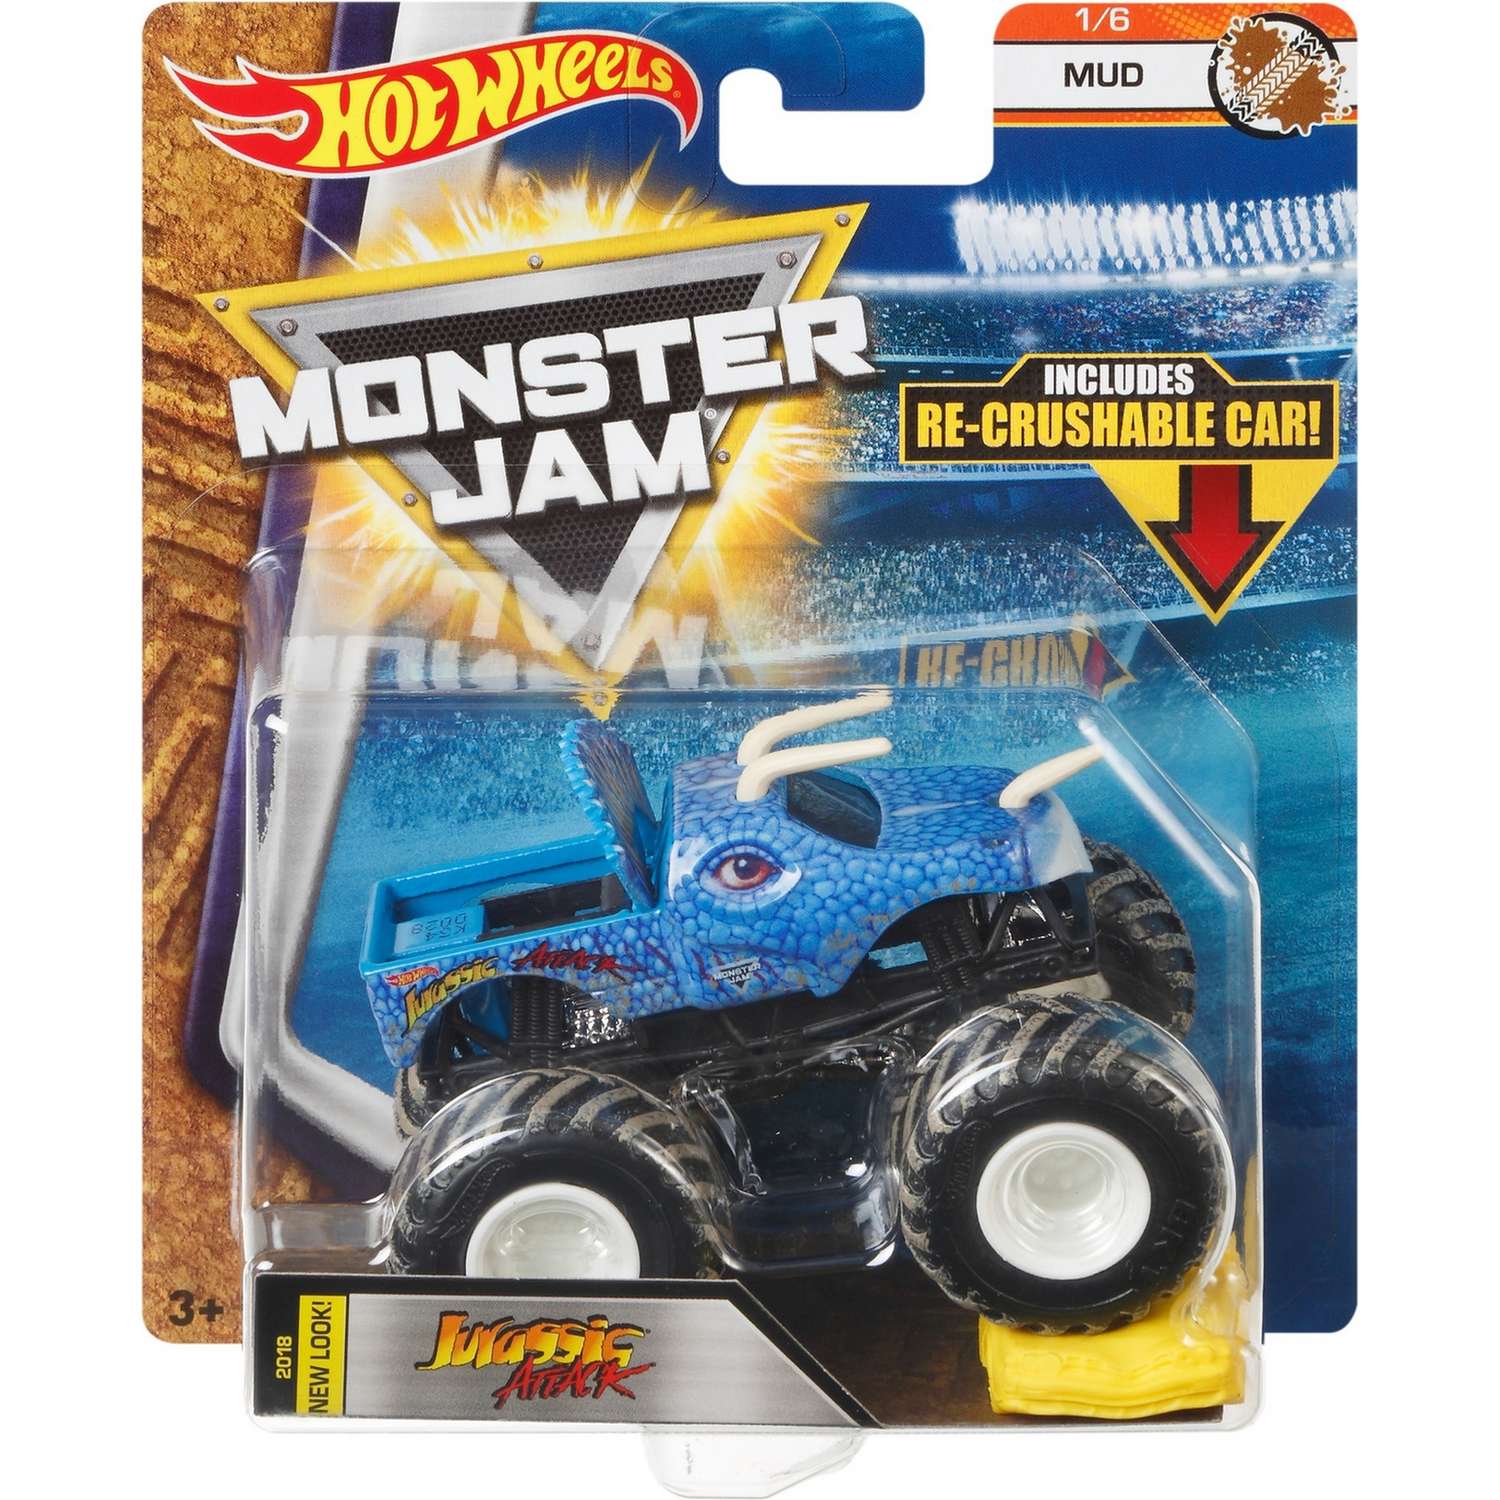 Машина Hot Wheels Monster Jam 1:64 Mud Юрская атака FLW86 21572 - фото 2